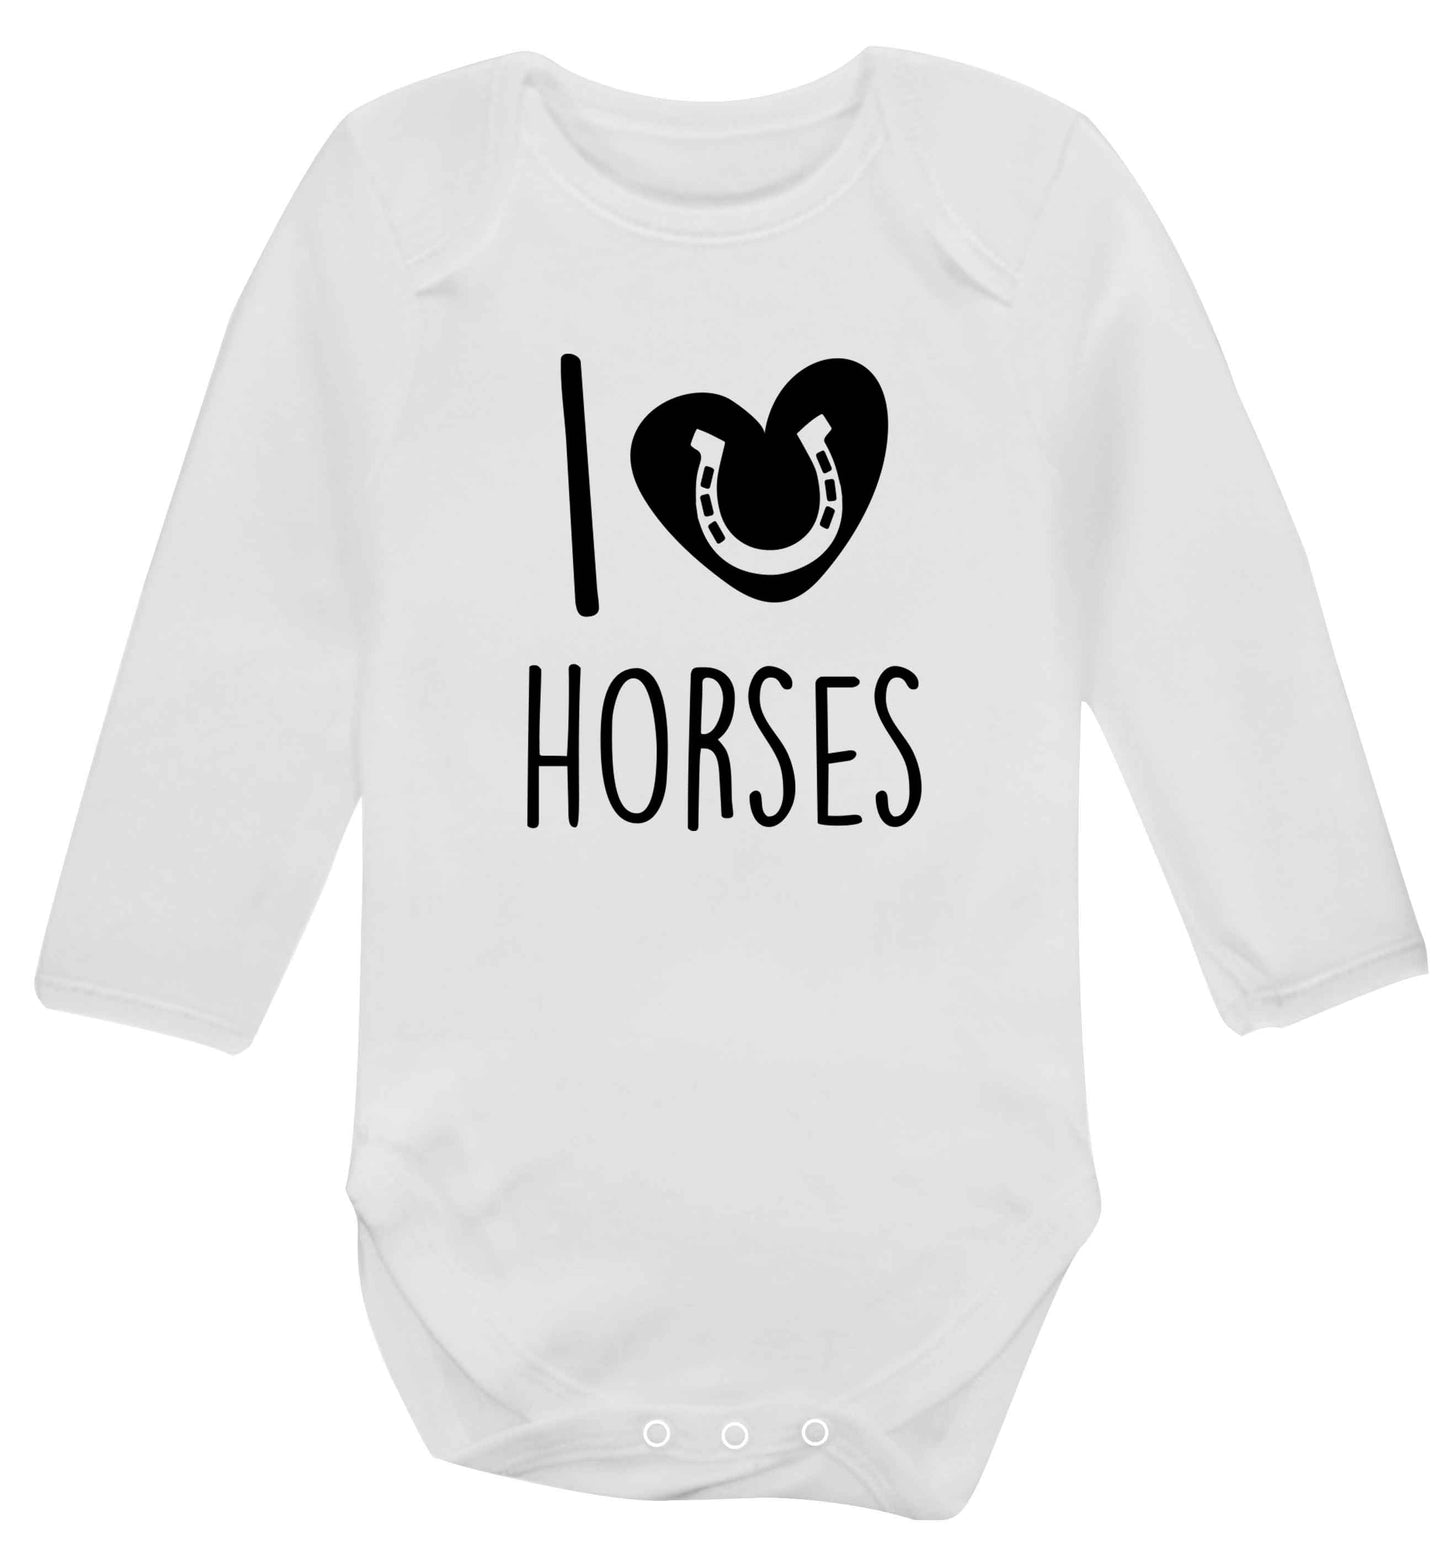 I love horses baby vest long sleeved white 6-12 months